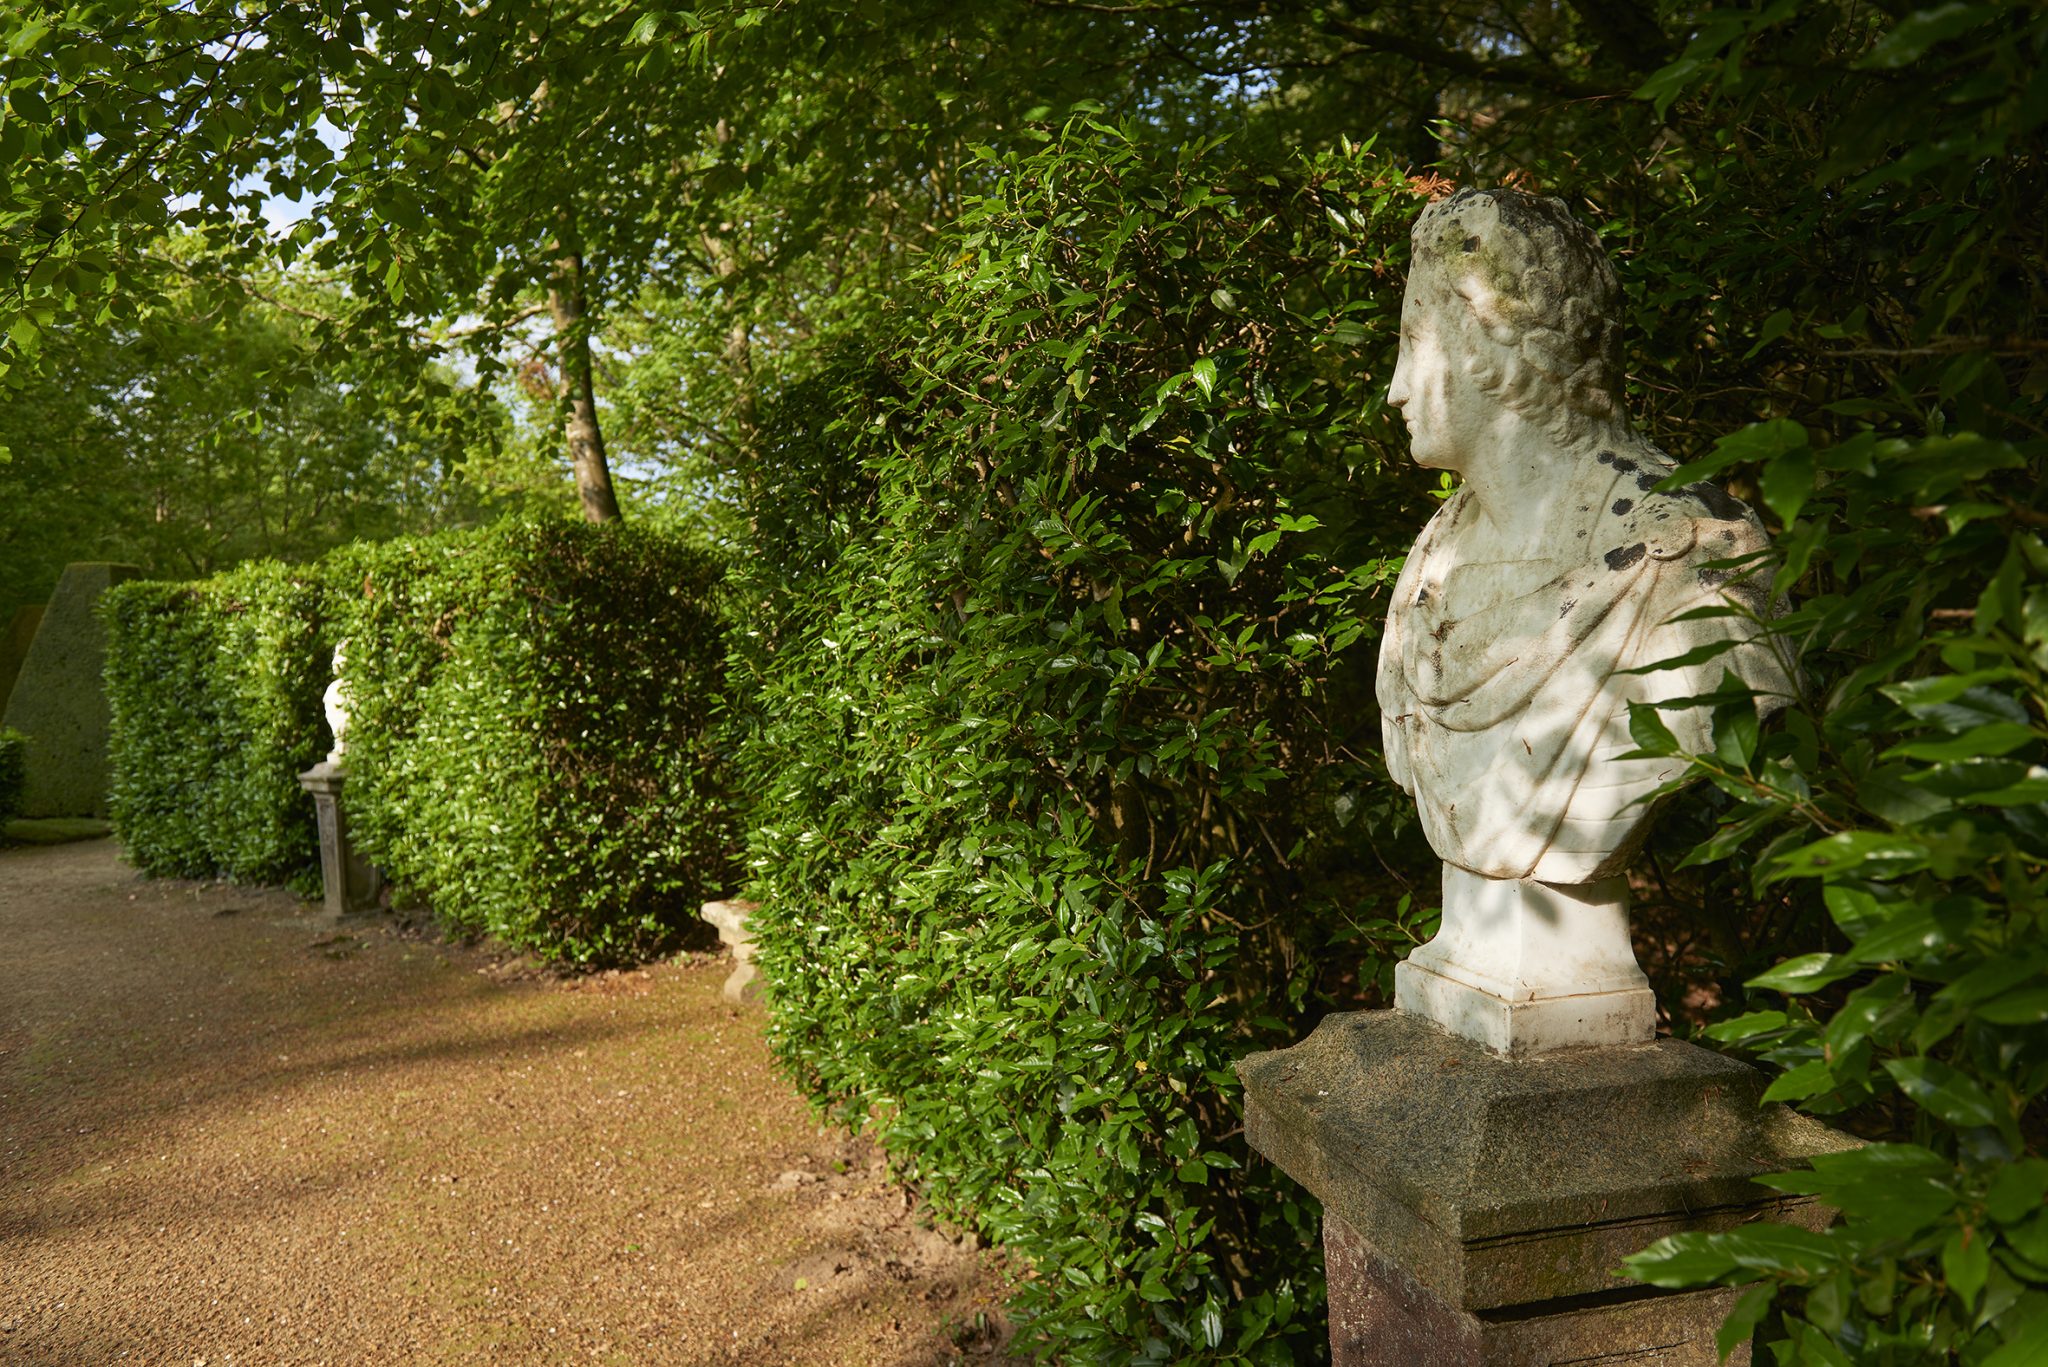 La sculpture au jardin - PAJ - Le magazine digital du patrimoine